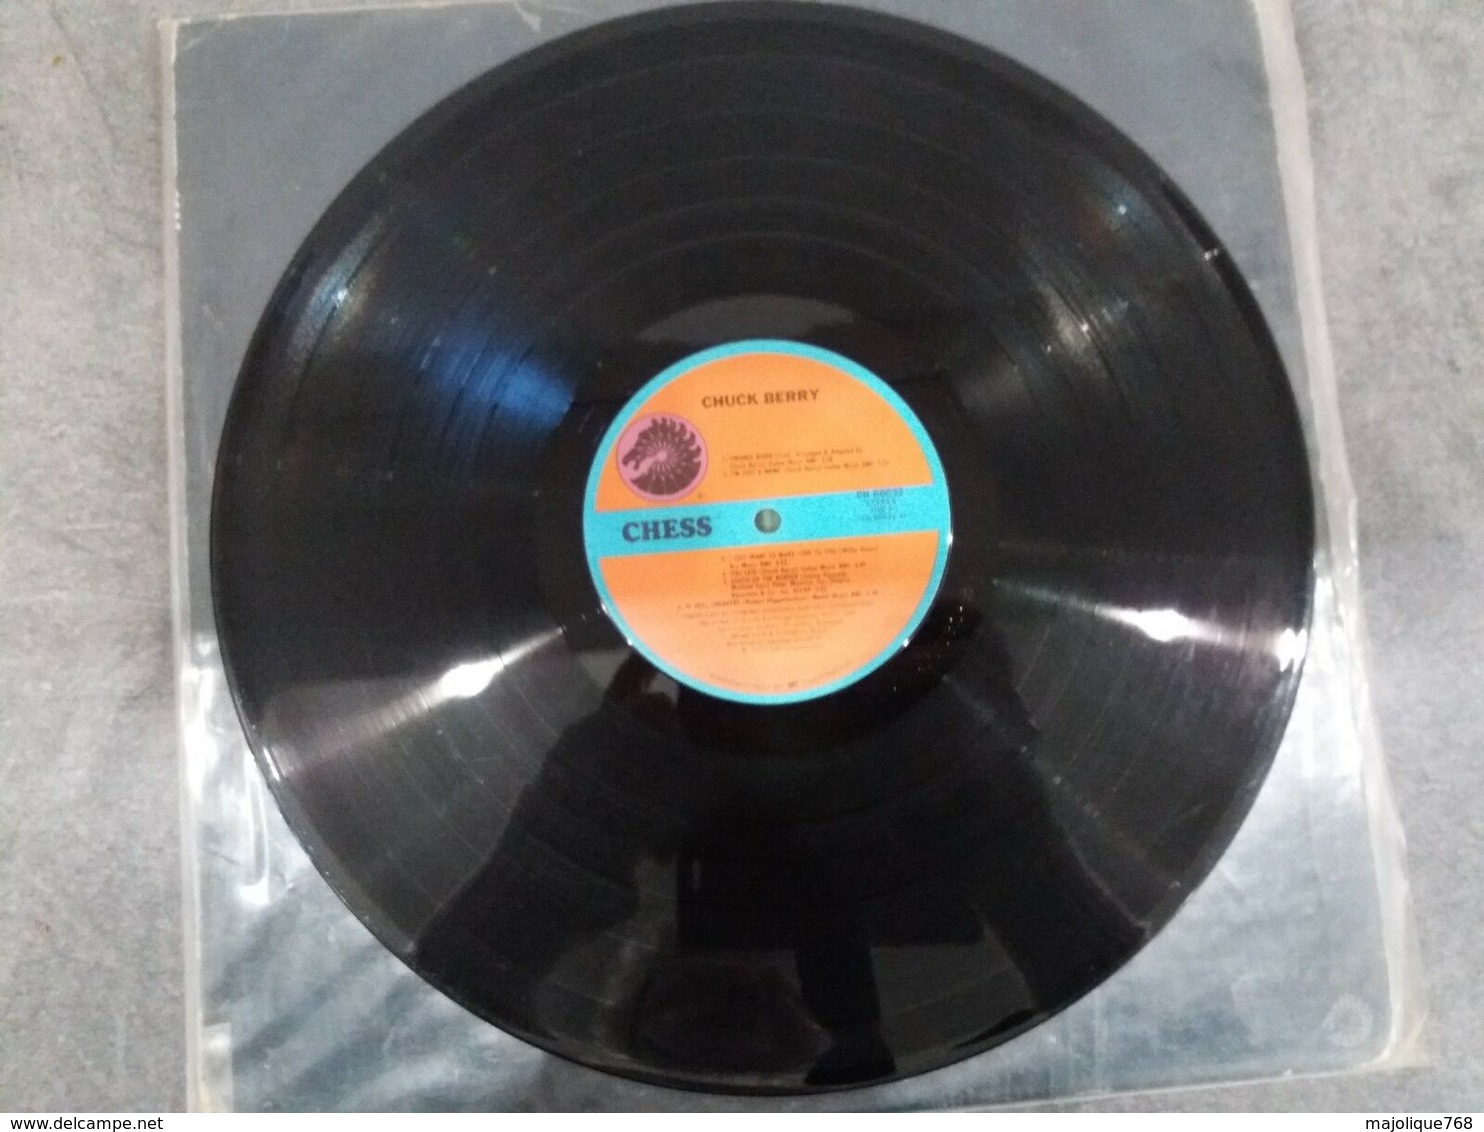 Chuck Berry - Swanee River - Chess CH 60032 - 1975  Vinyl LP Original USA - Les Coins Sont Coupés  - - Rock